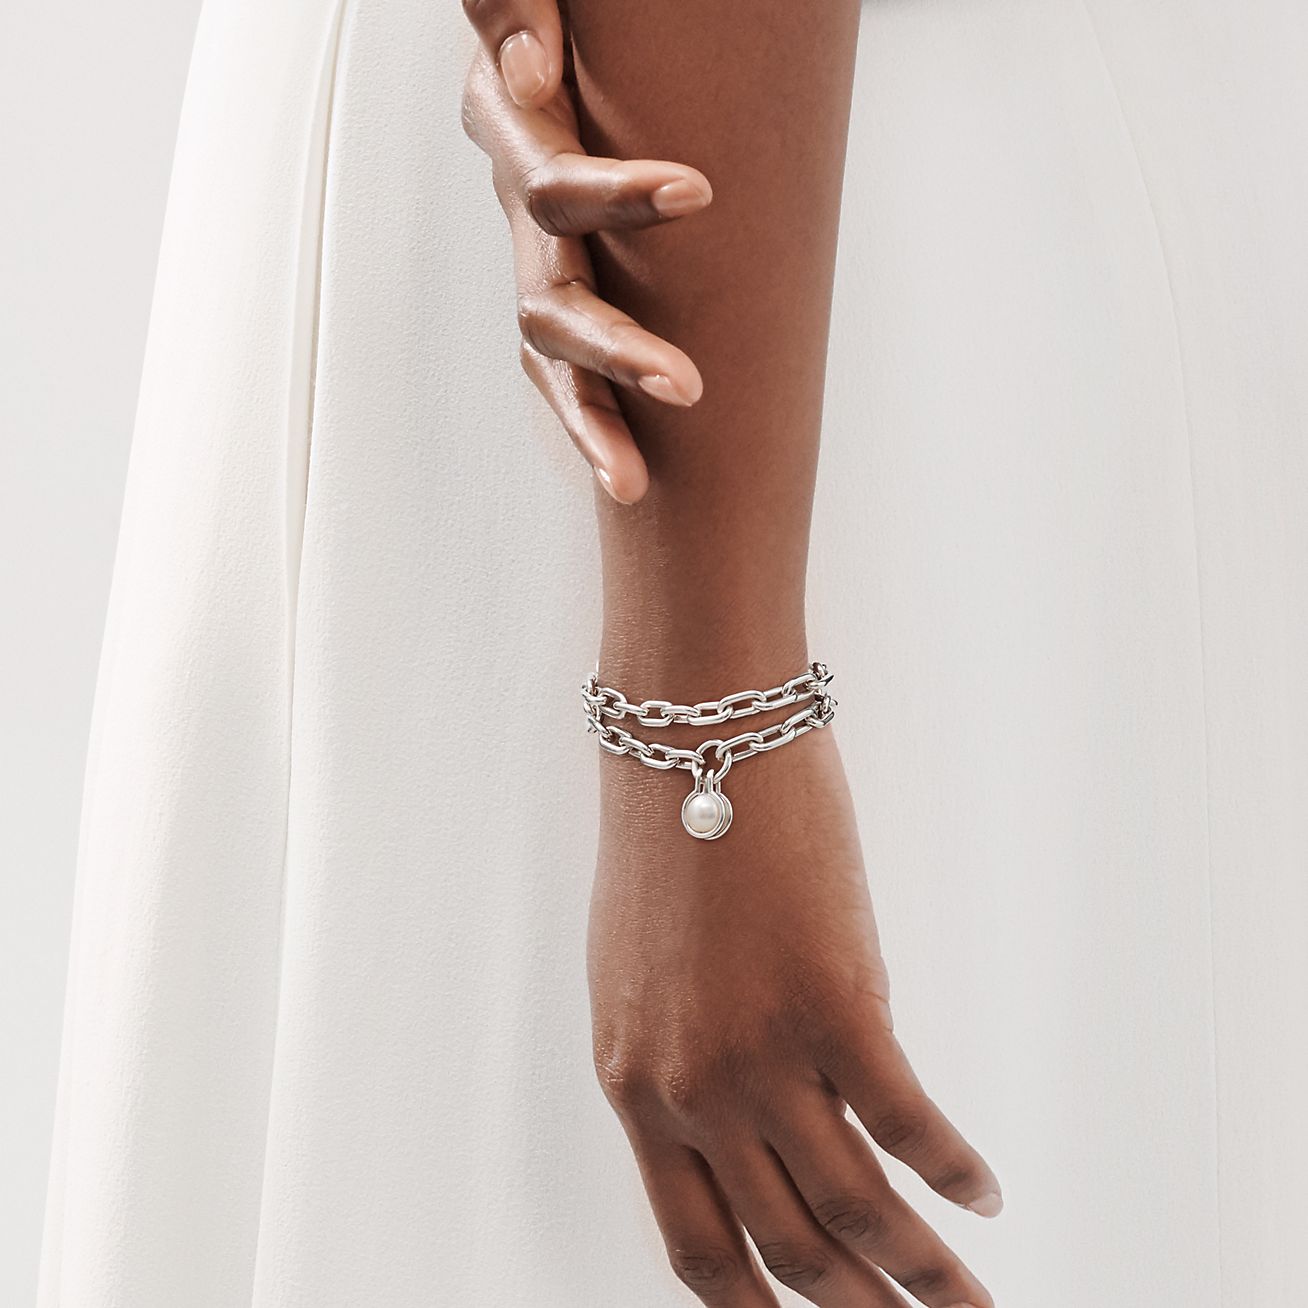 Tiffany HardWear Freshwater Pearl Bracelet in Sterling Silver